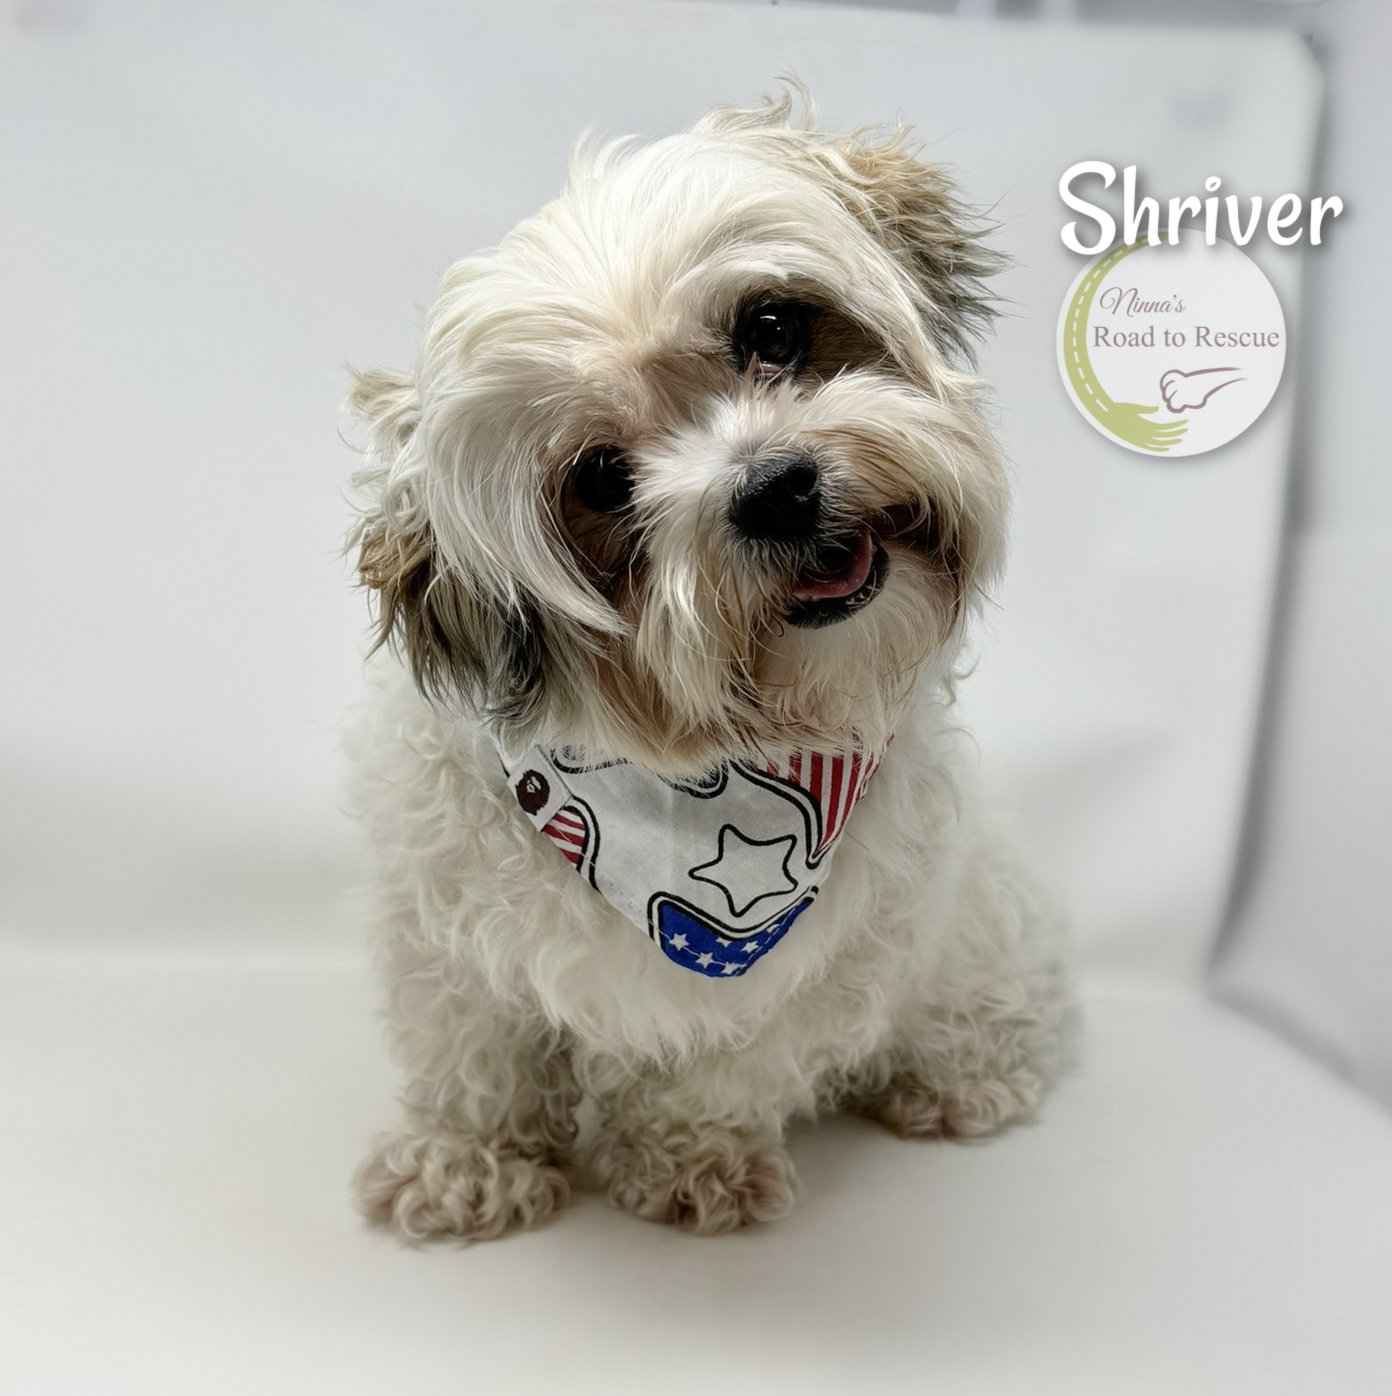 adoptable Dog in Benton, LA named Shriver